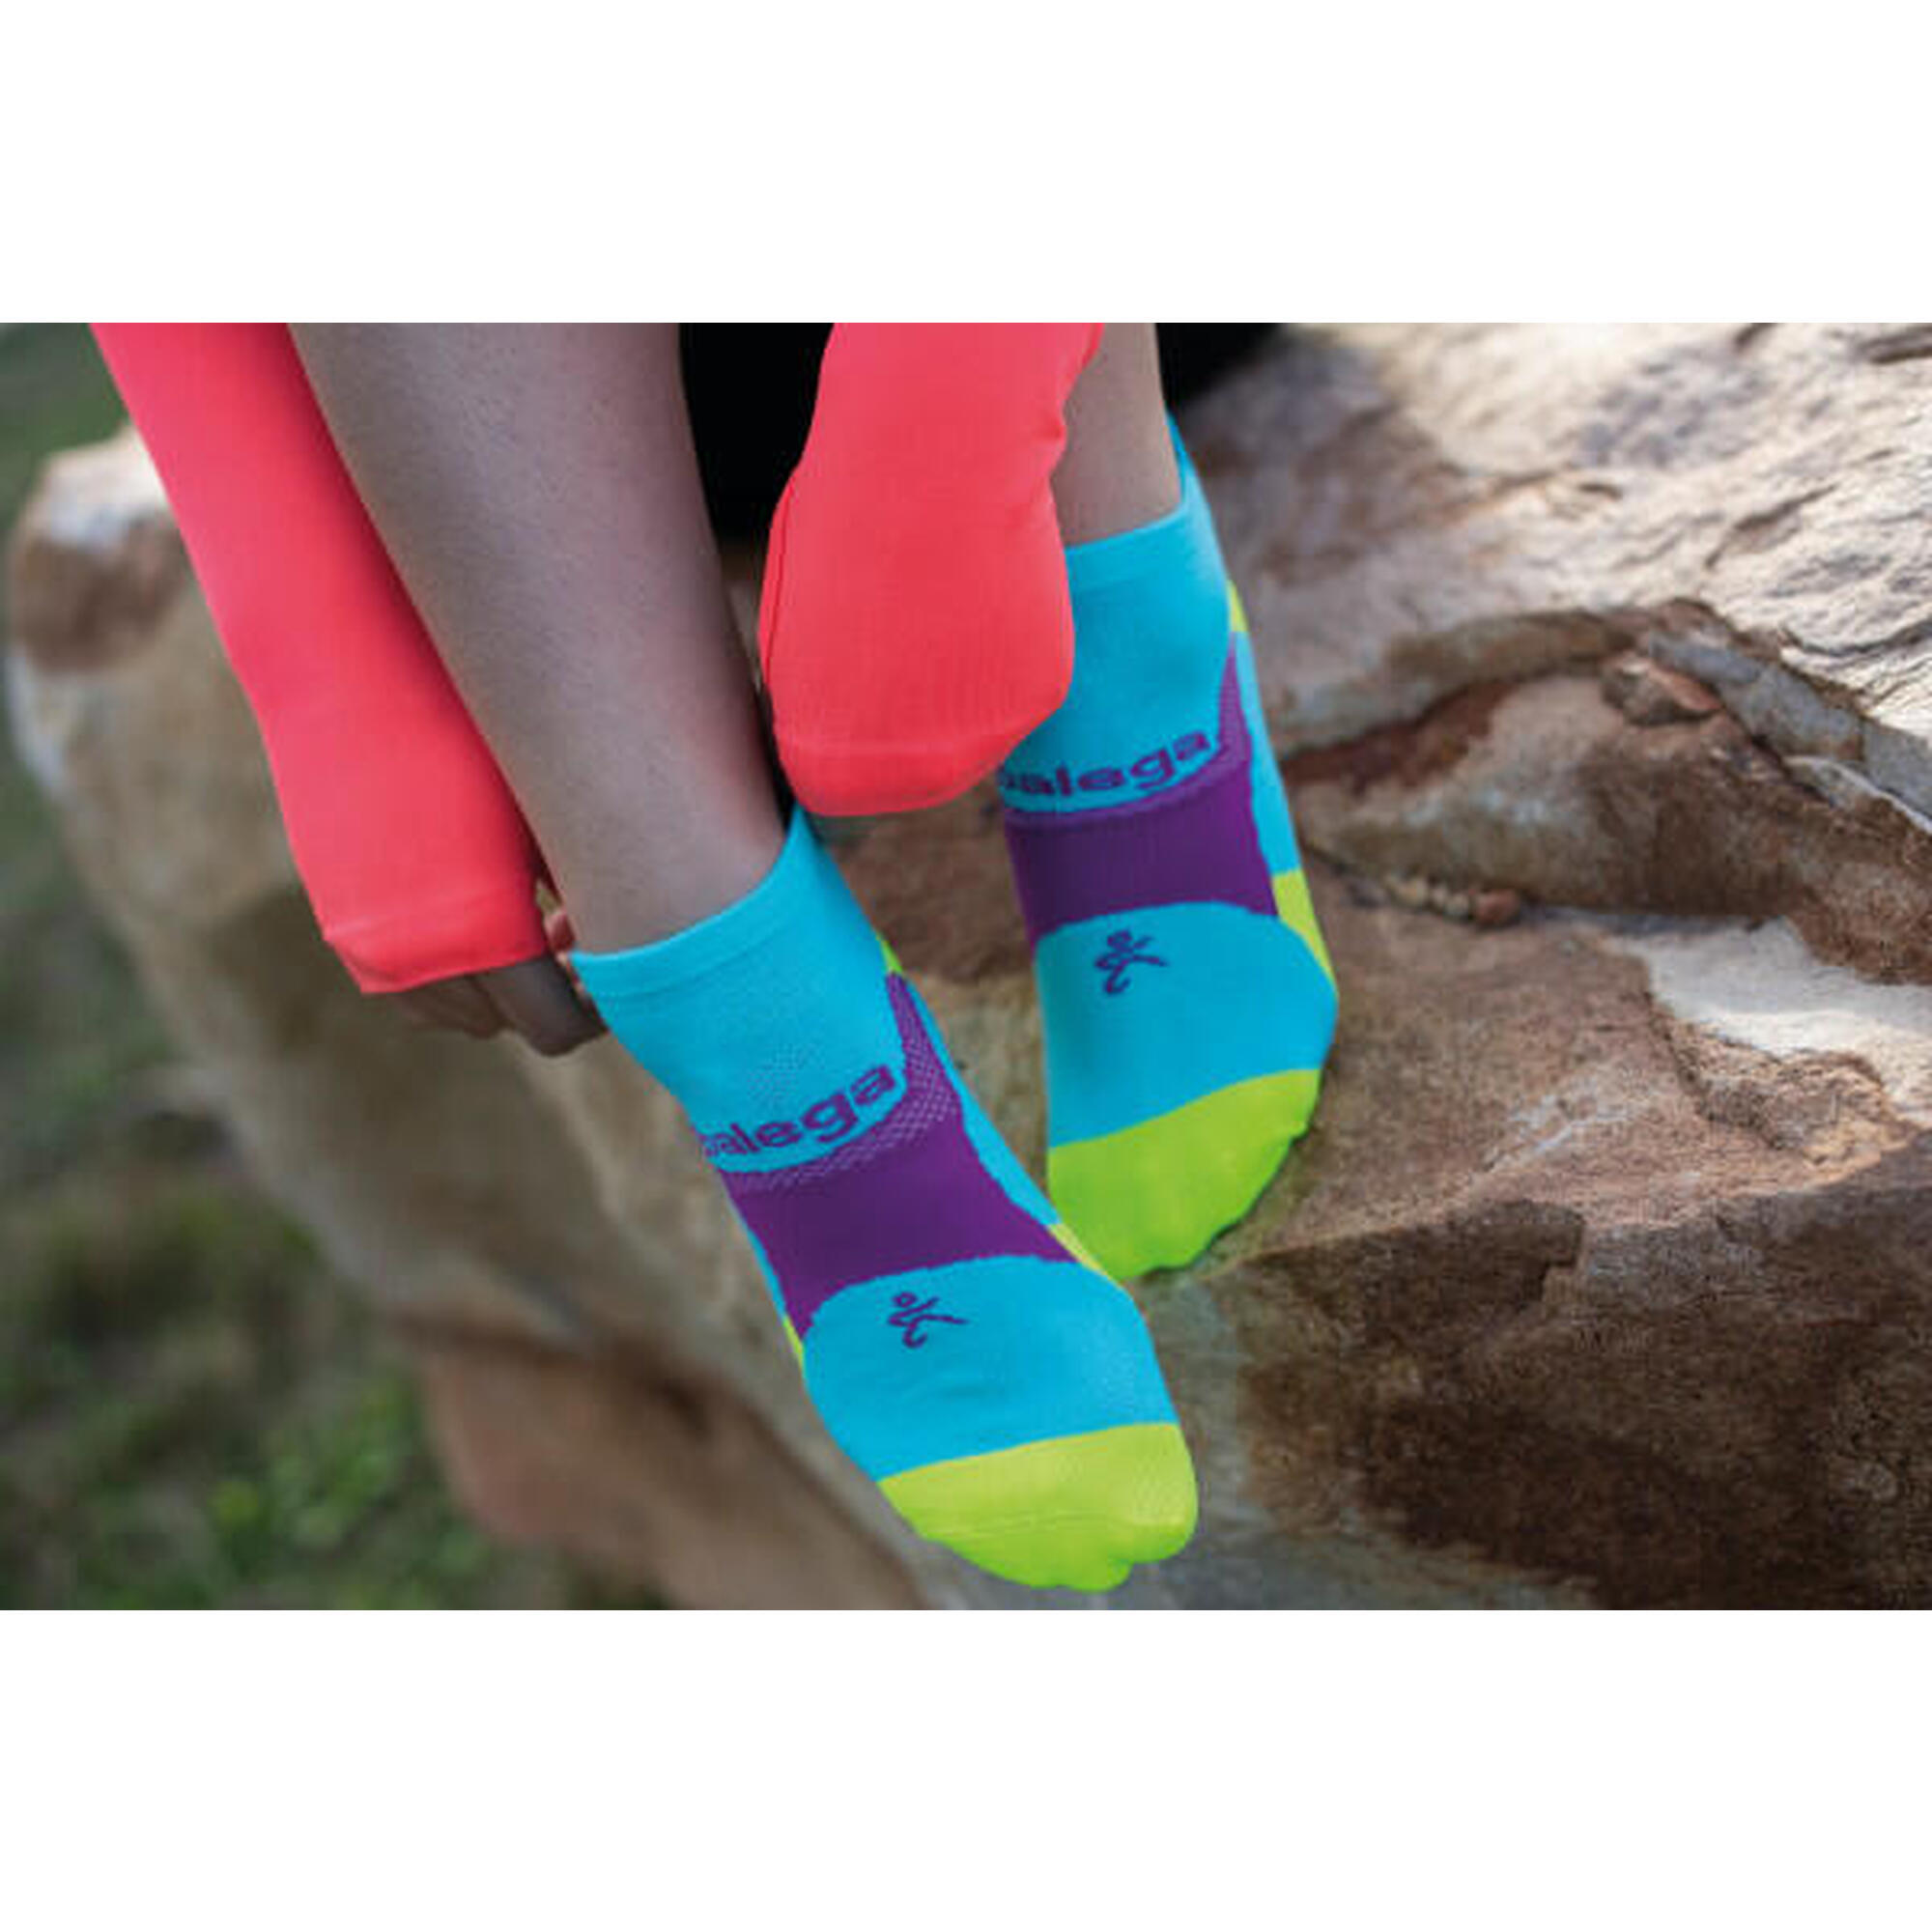 Balega chaussette légères, respirantes et confortables pour running taille L